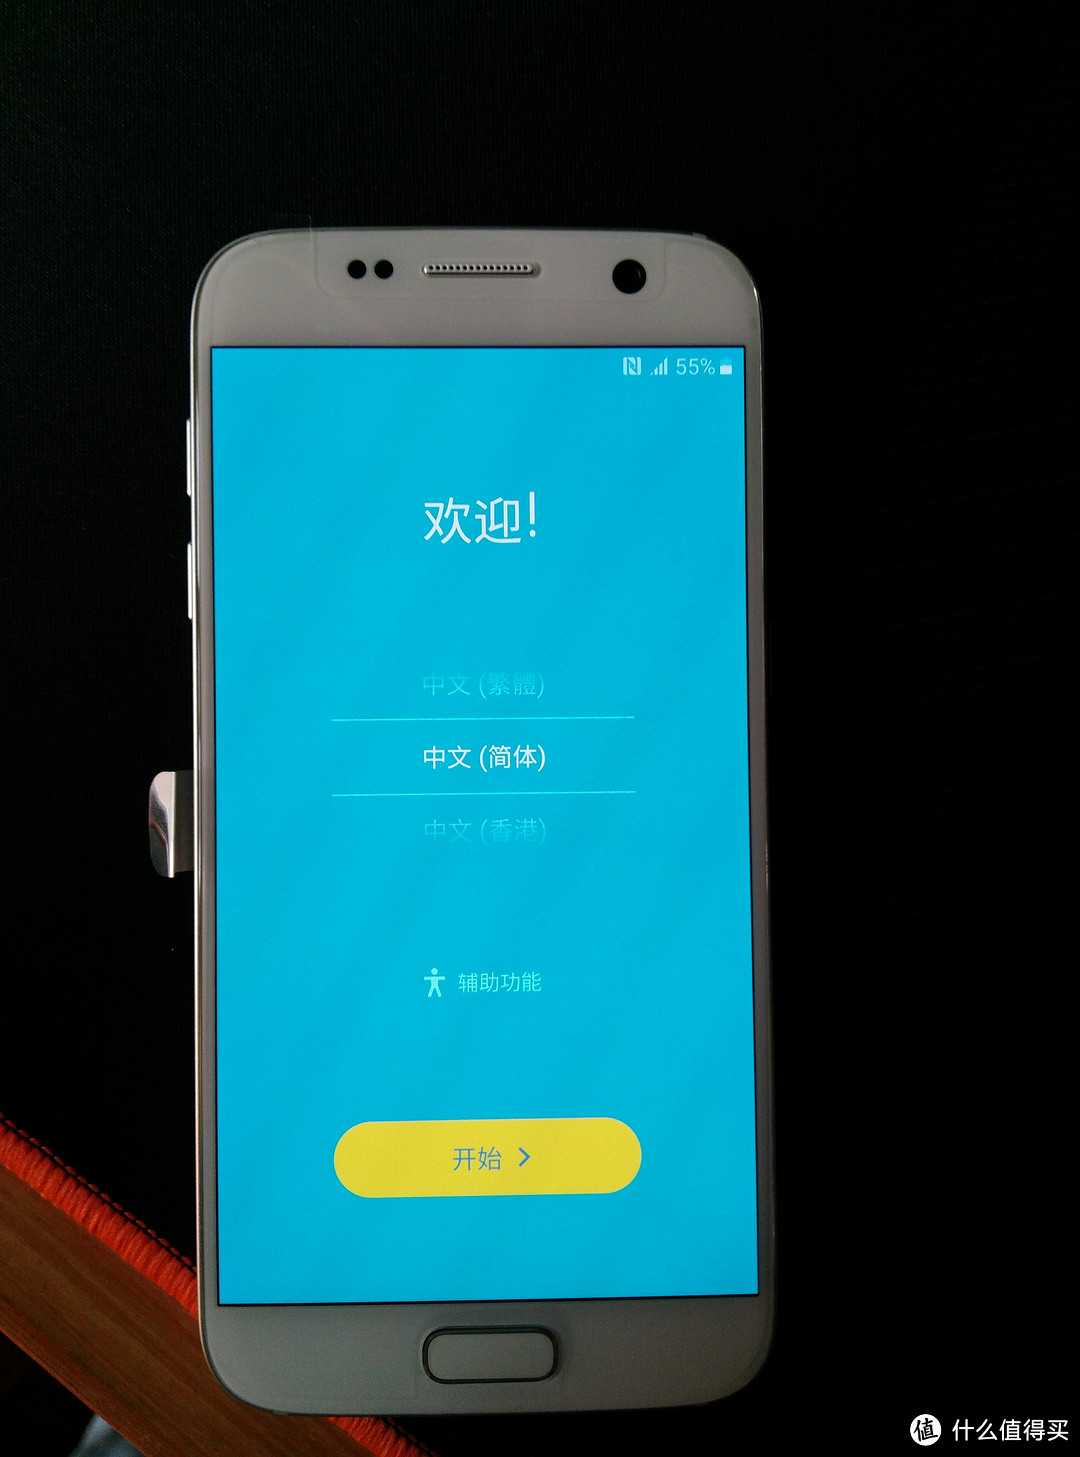 SAMSUNG 三星 Galaxy S7 雪晶白 全网通手机 开箱